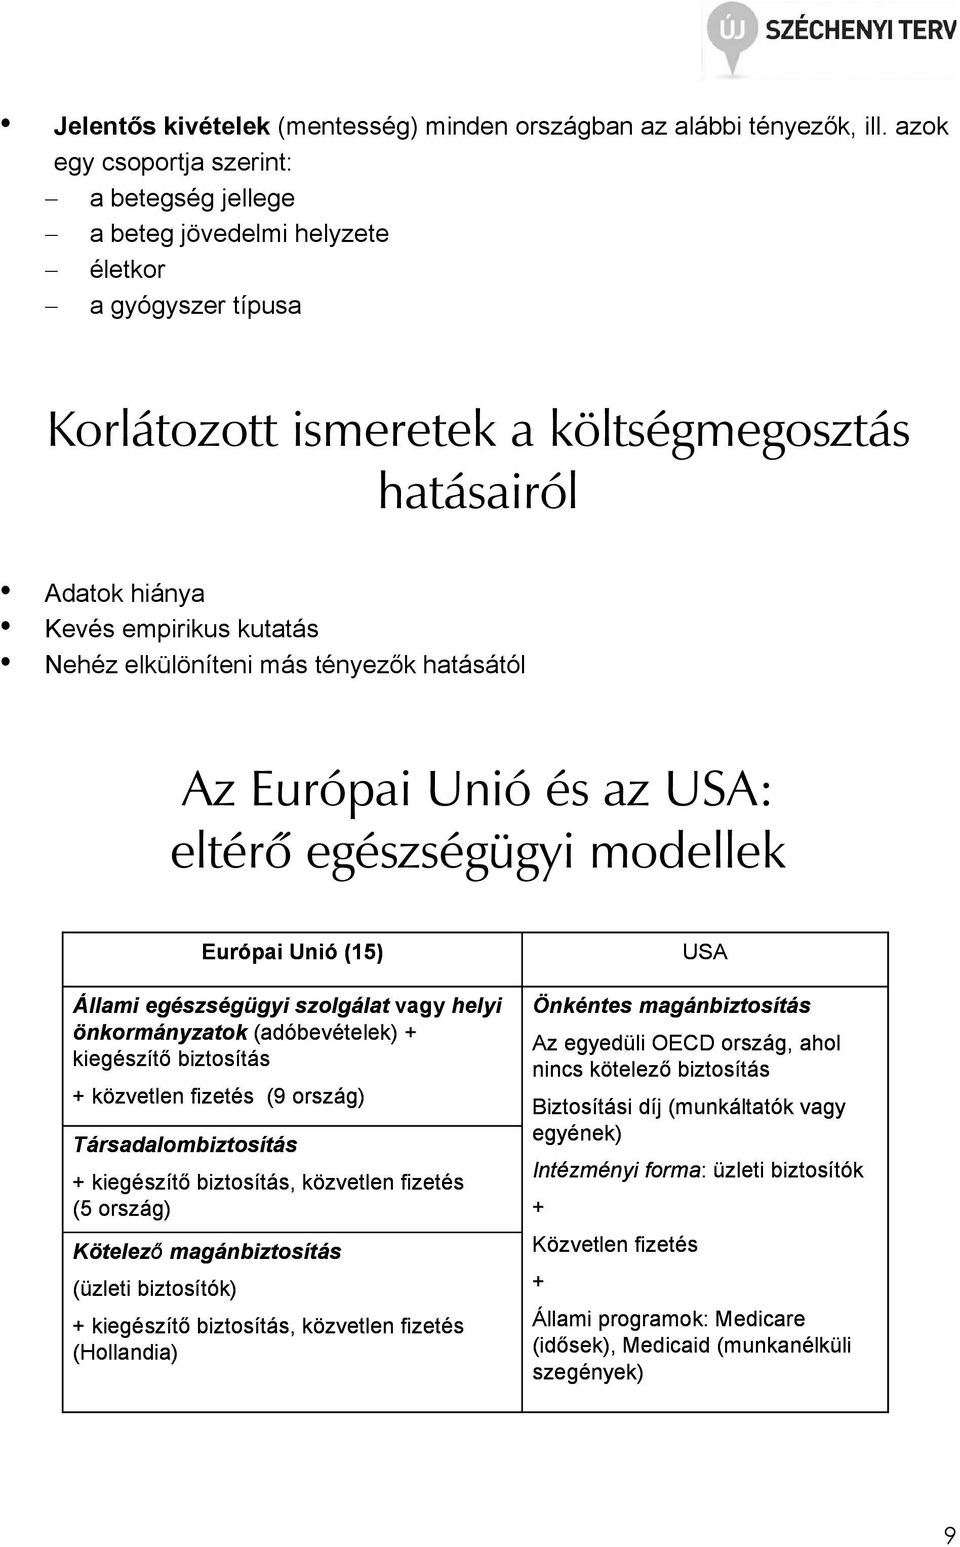 elkülöníteni más tényezık hatásától Az Európai Unió és az USA: eltérõ egészségügyi modellek Európai Unió (15) Állami egészségügyi szolgálat vagy helyi önkormányzatok (adóbevételek) + kiegészítı